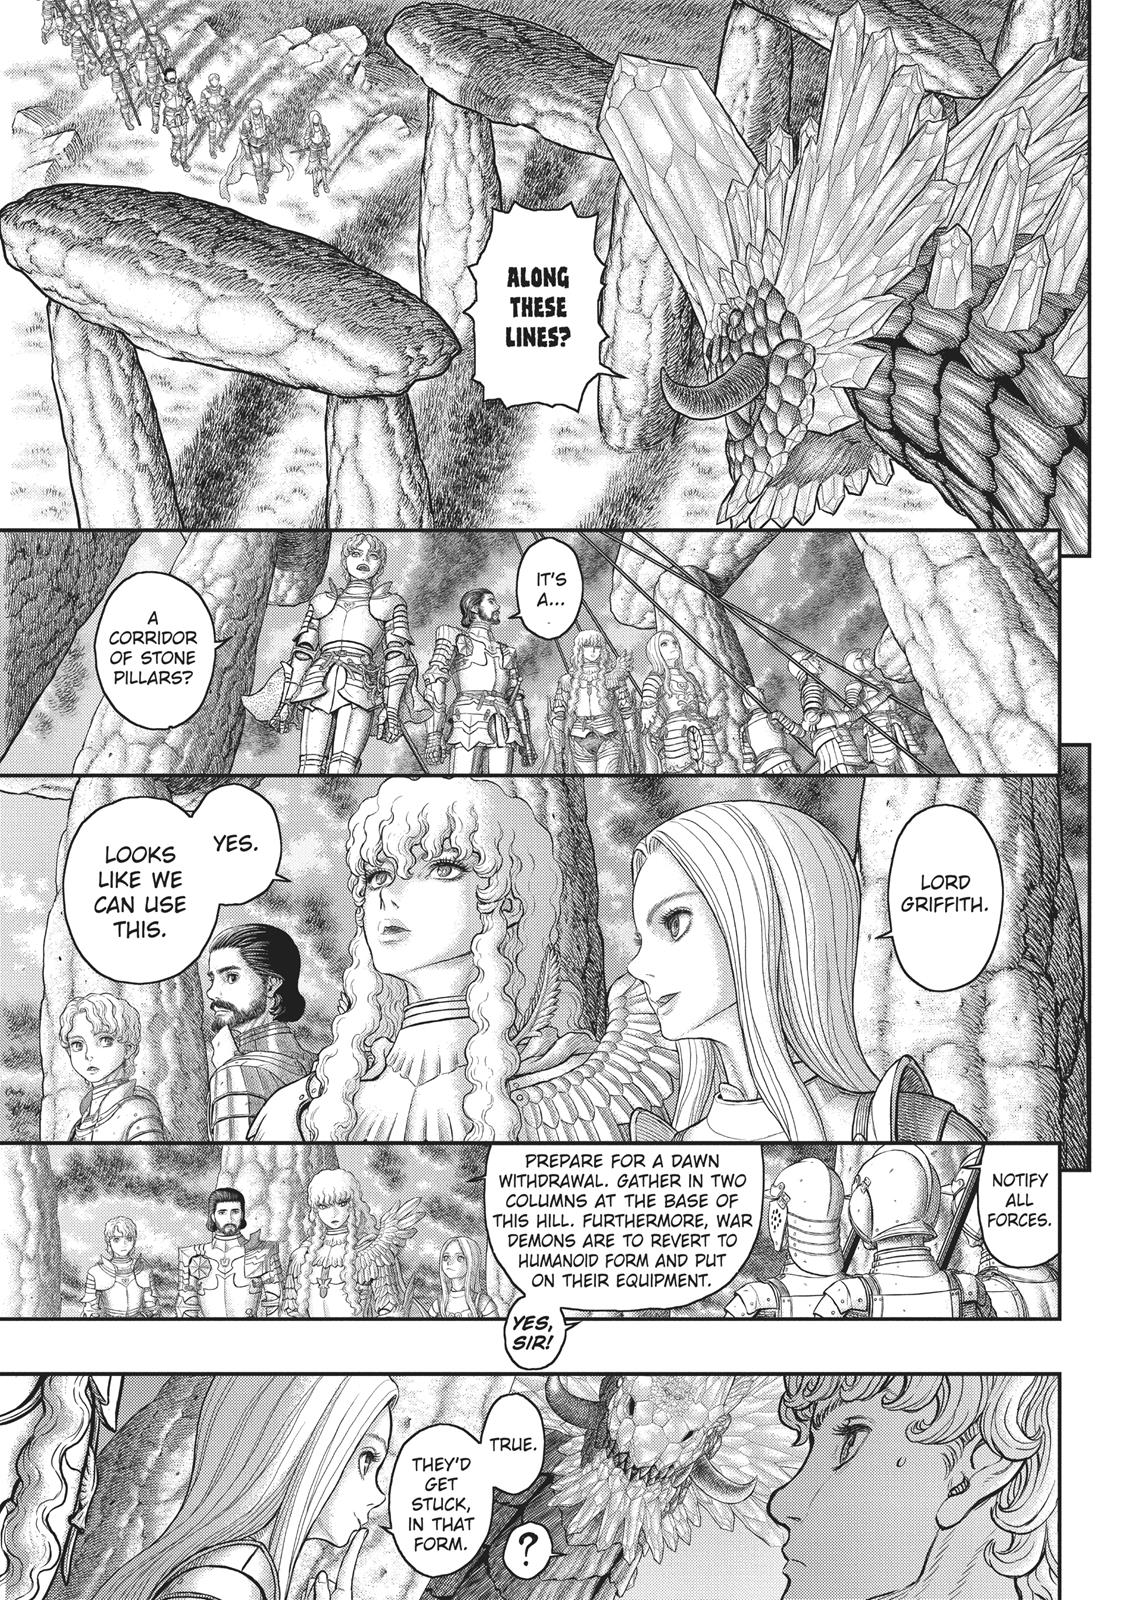 Berserk Manga Chapter 357 image 09